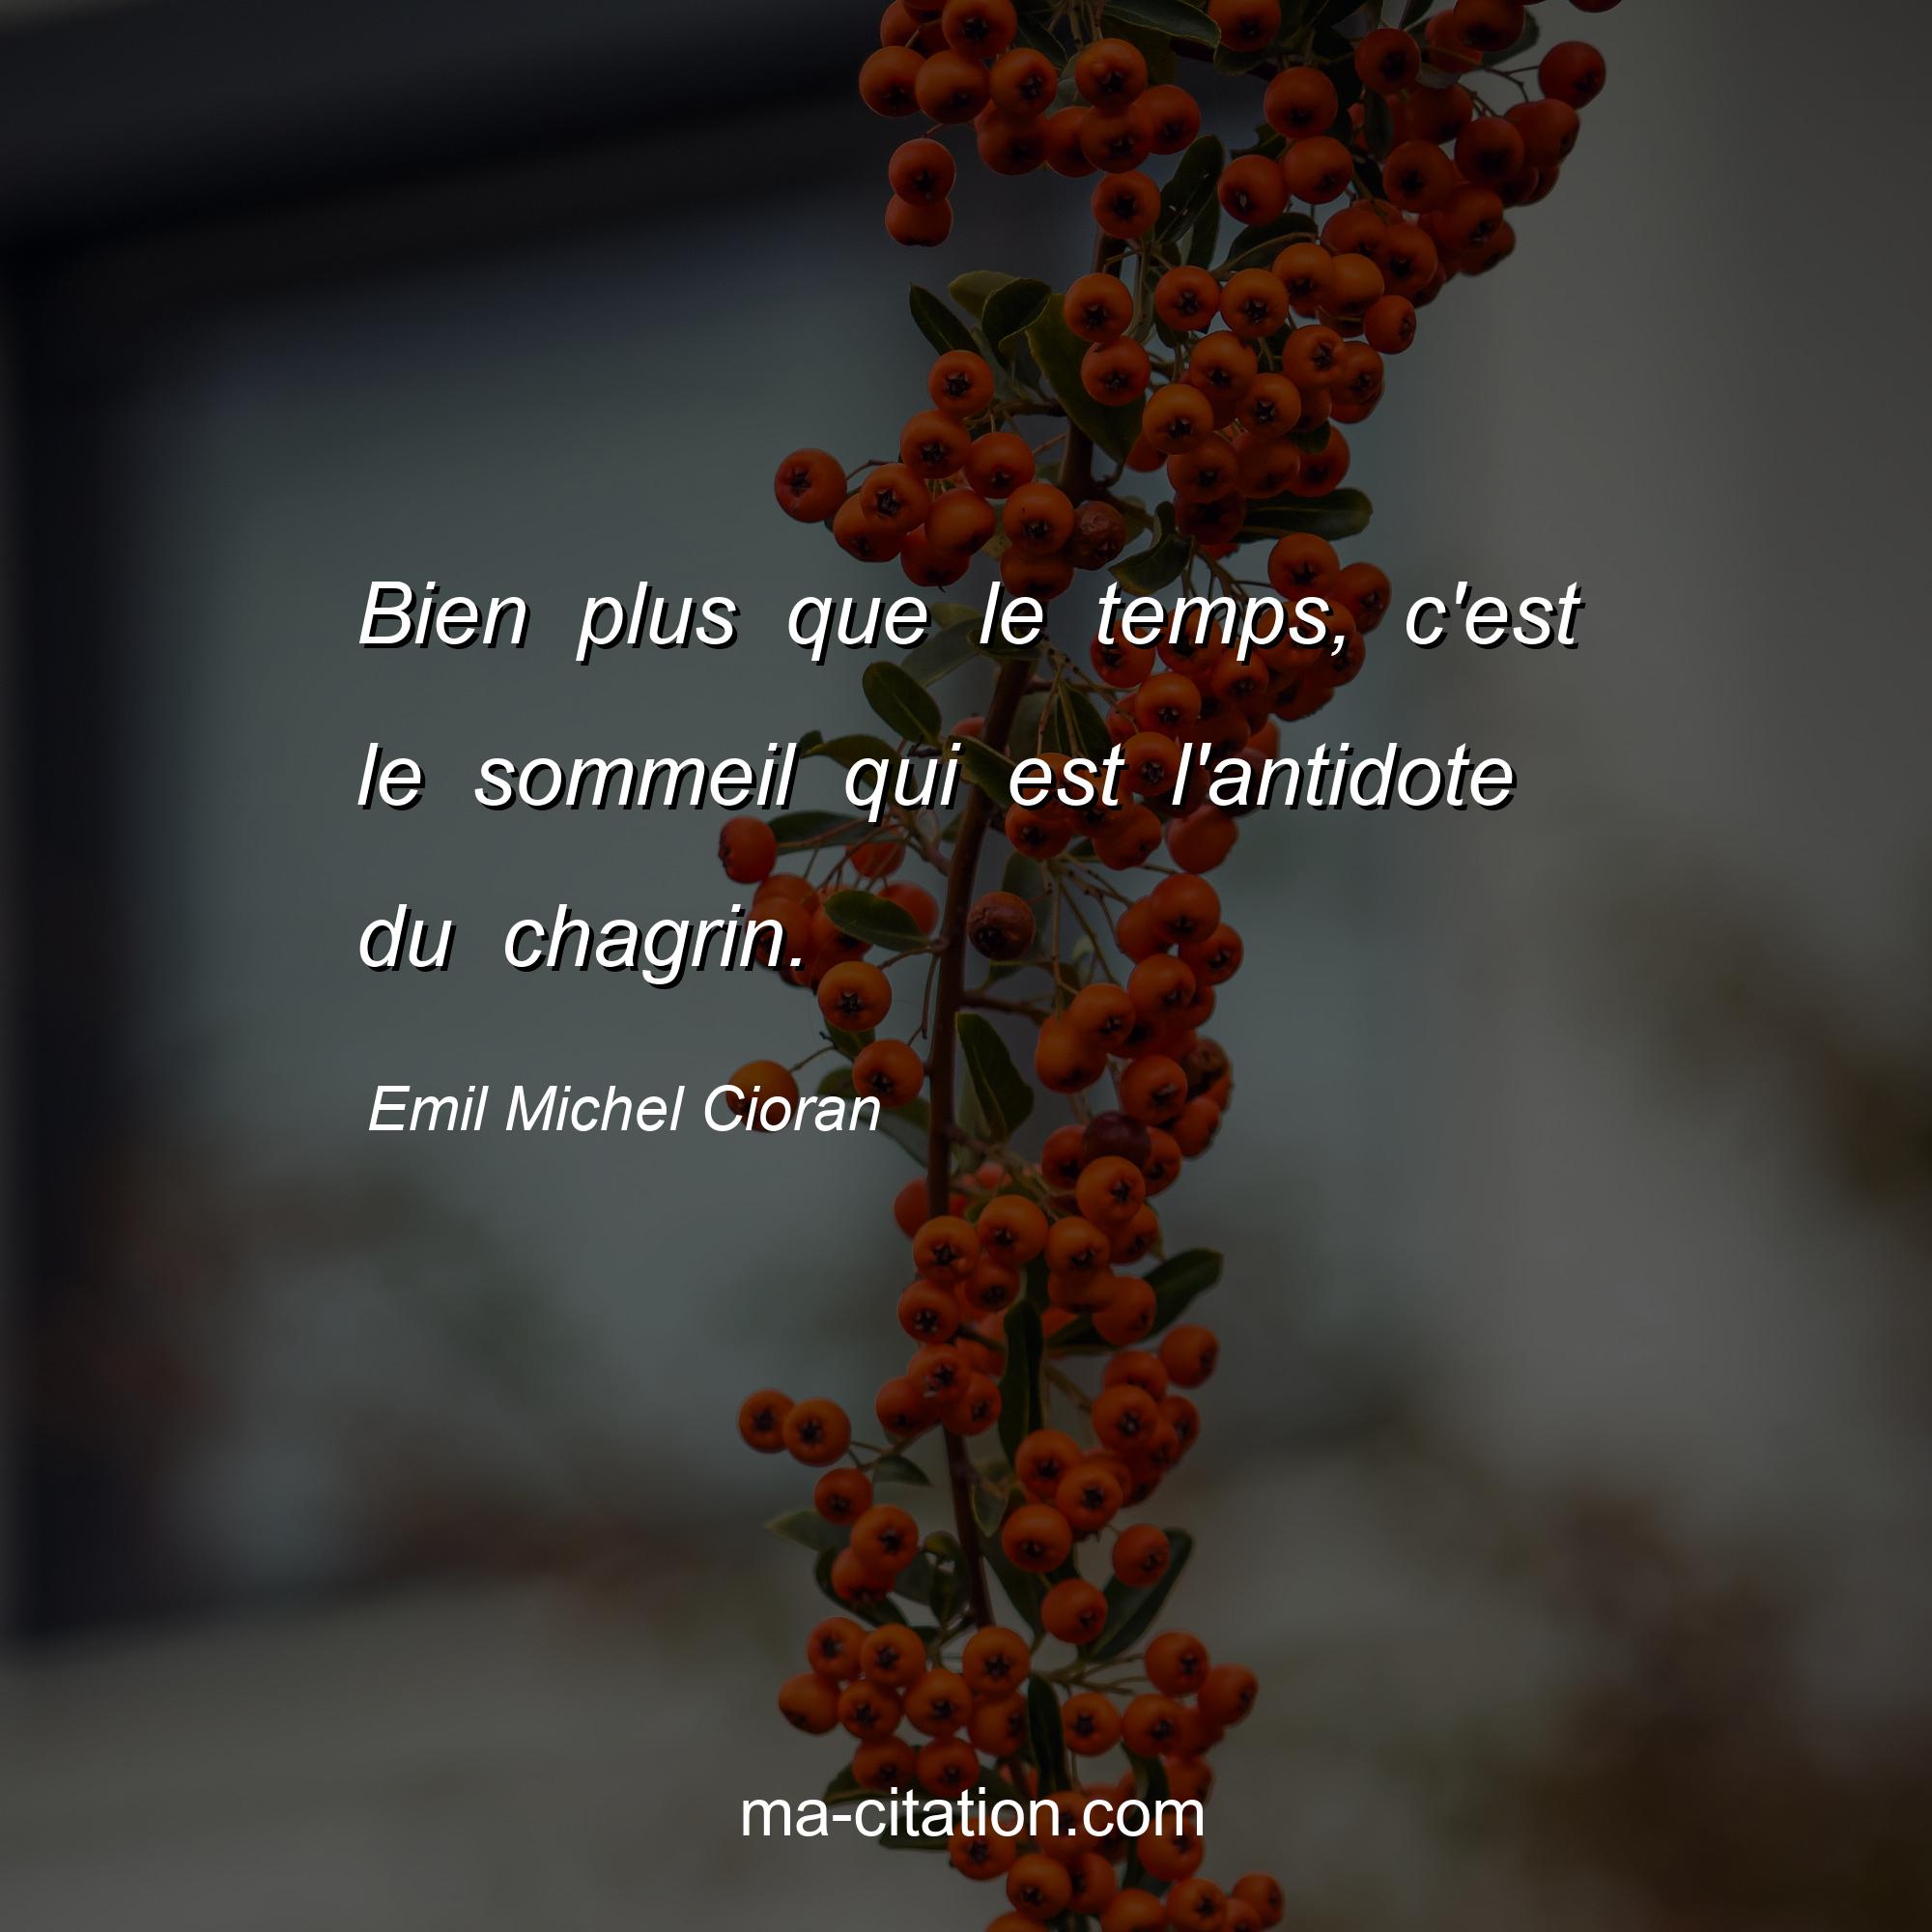 Emil Michel Cioran : Bien plus que le temps, c'est le sommeil qui est l'antidote du chagrin.